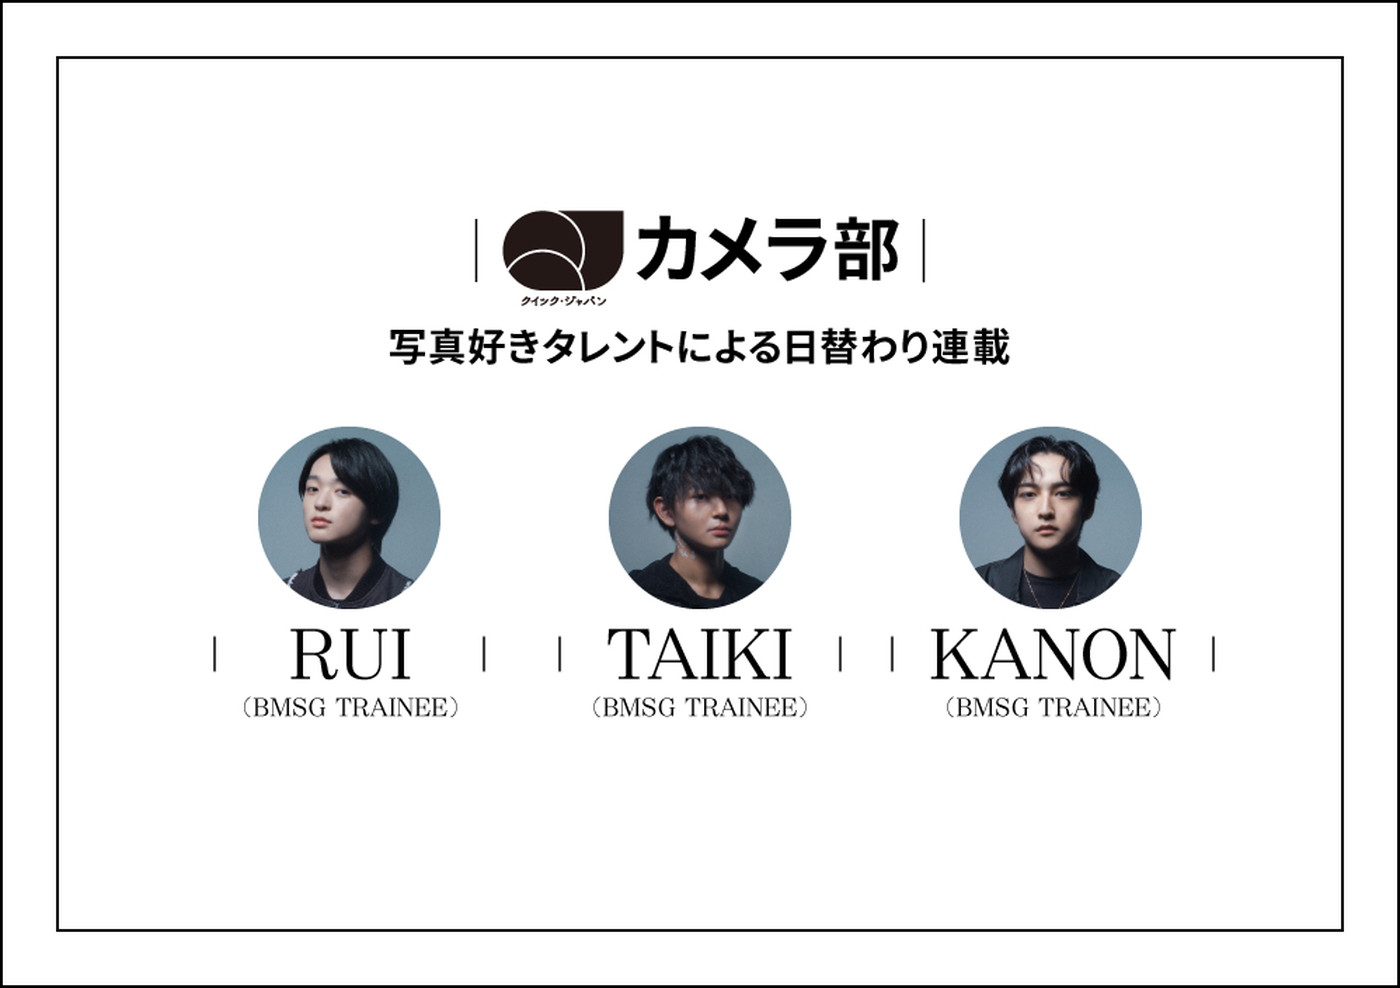 SKY-HI主宰BMSGのトレーニーであるRUI、TAIKI、KANONが「QJカメラ部」新メンバーに決定 - 画像一覧（5/5）